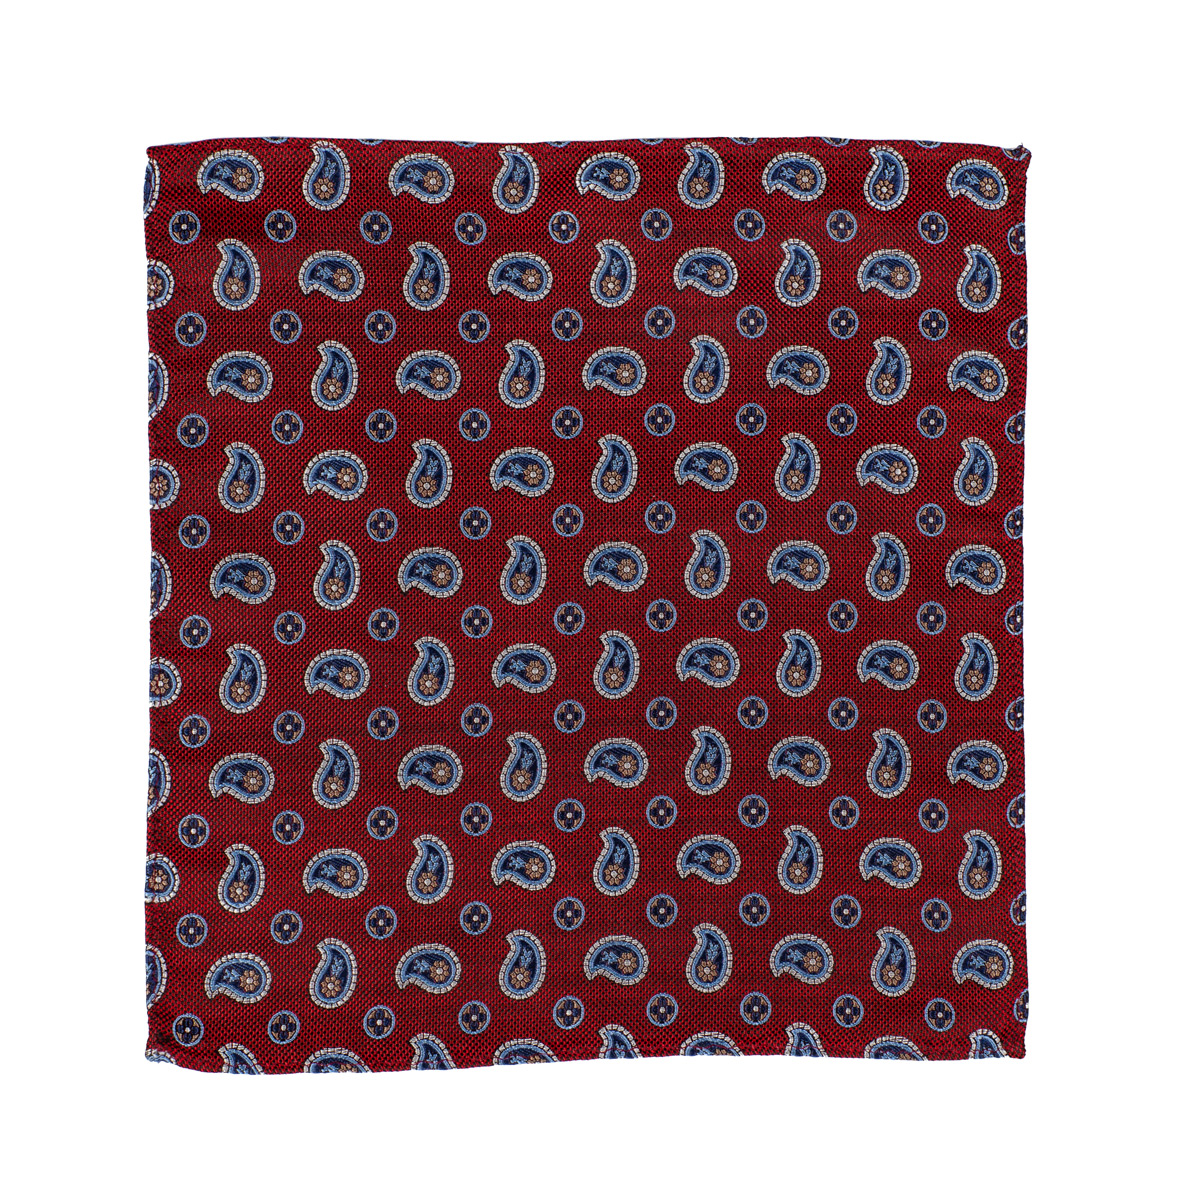 Stoff vom Einstecktuch mit Paisley-Muster in rot-blau